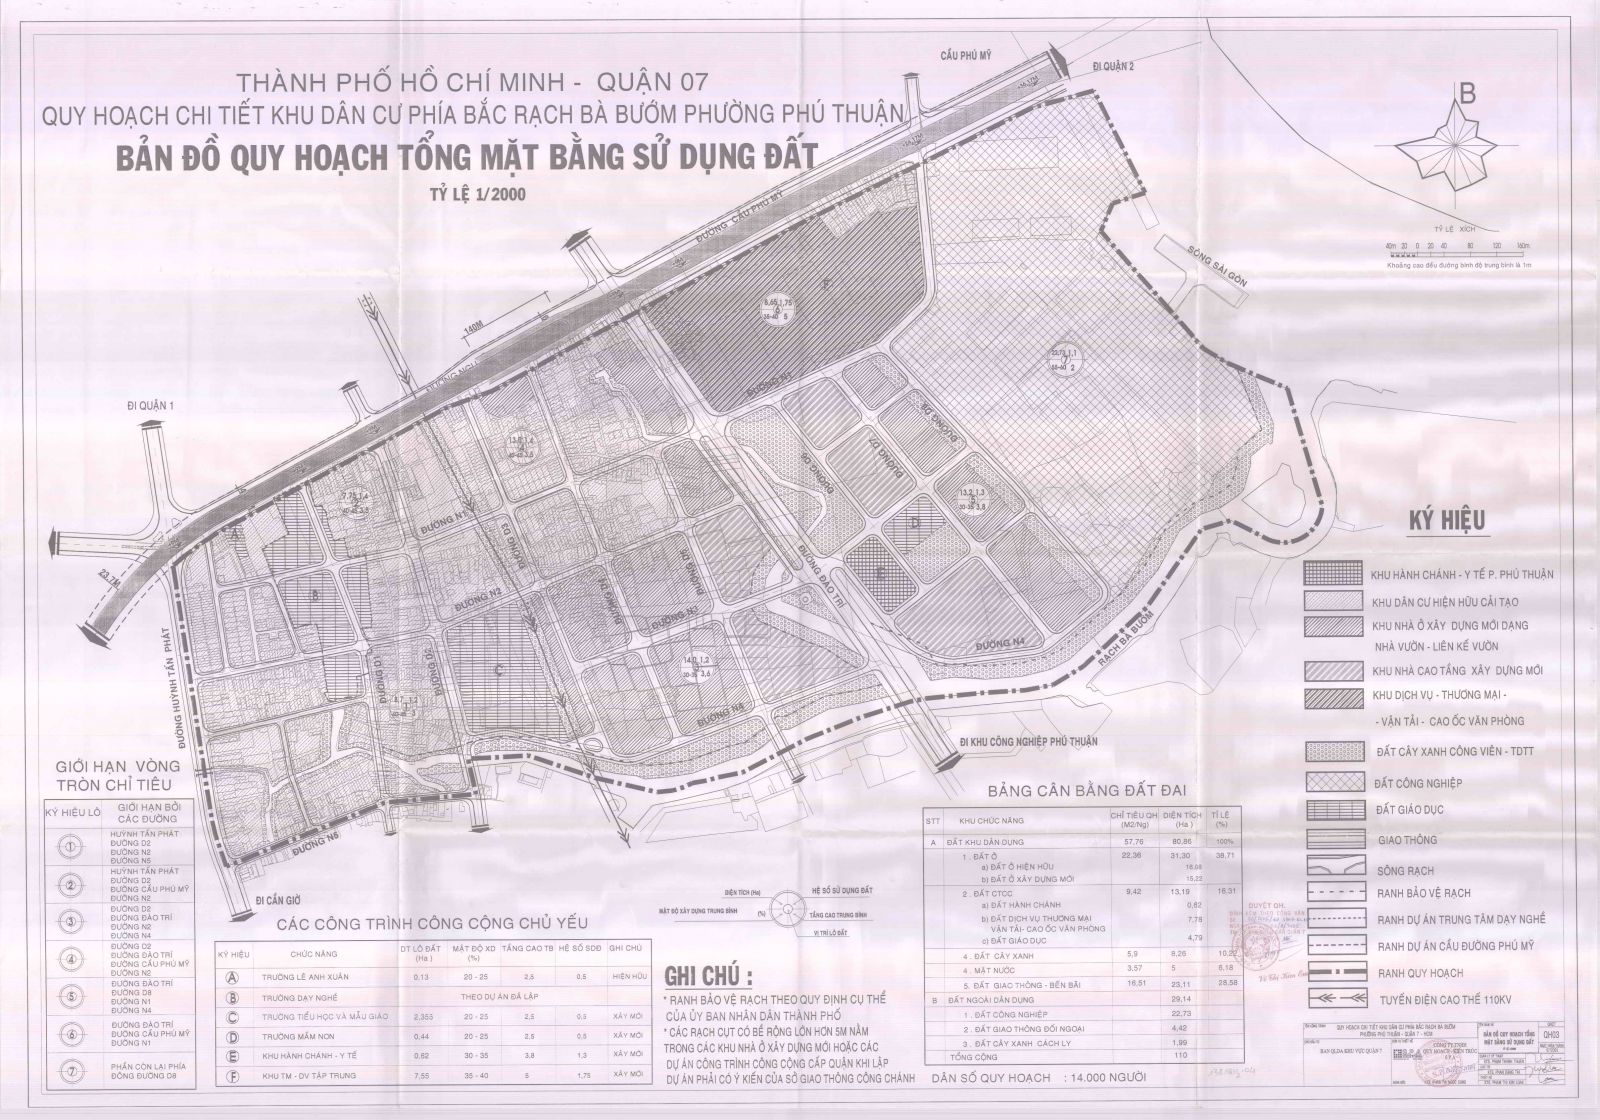 Bản đồ quy hoạch 1/2000 Khu dân cư phía Bắc rạch Bà Bướm, Quận 7